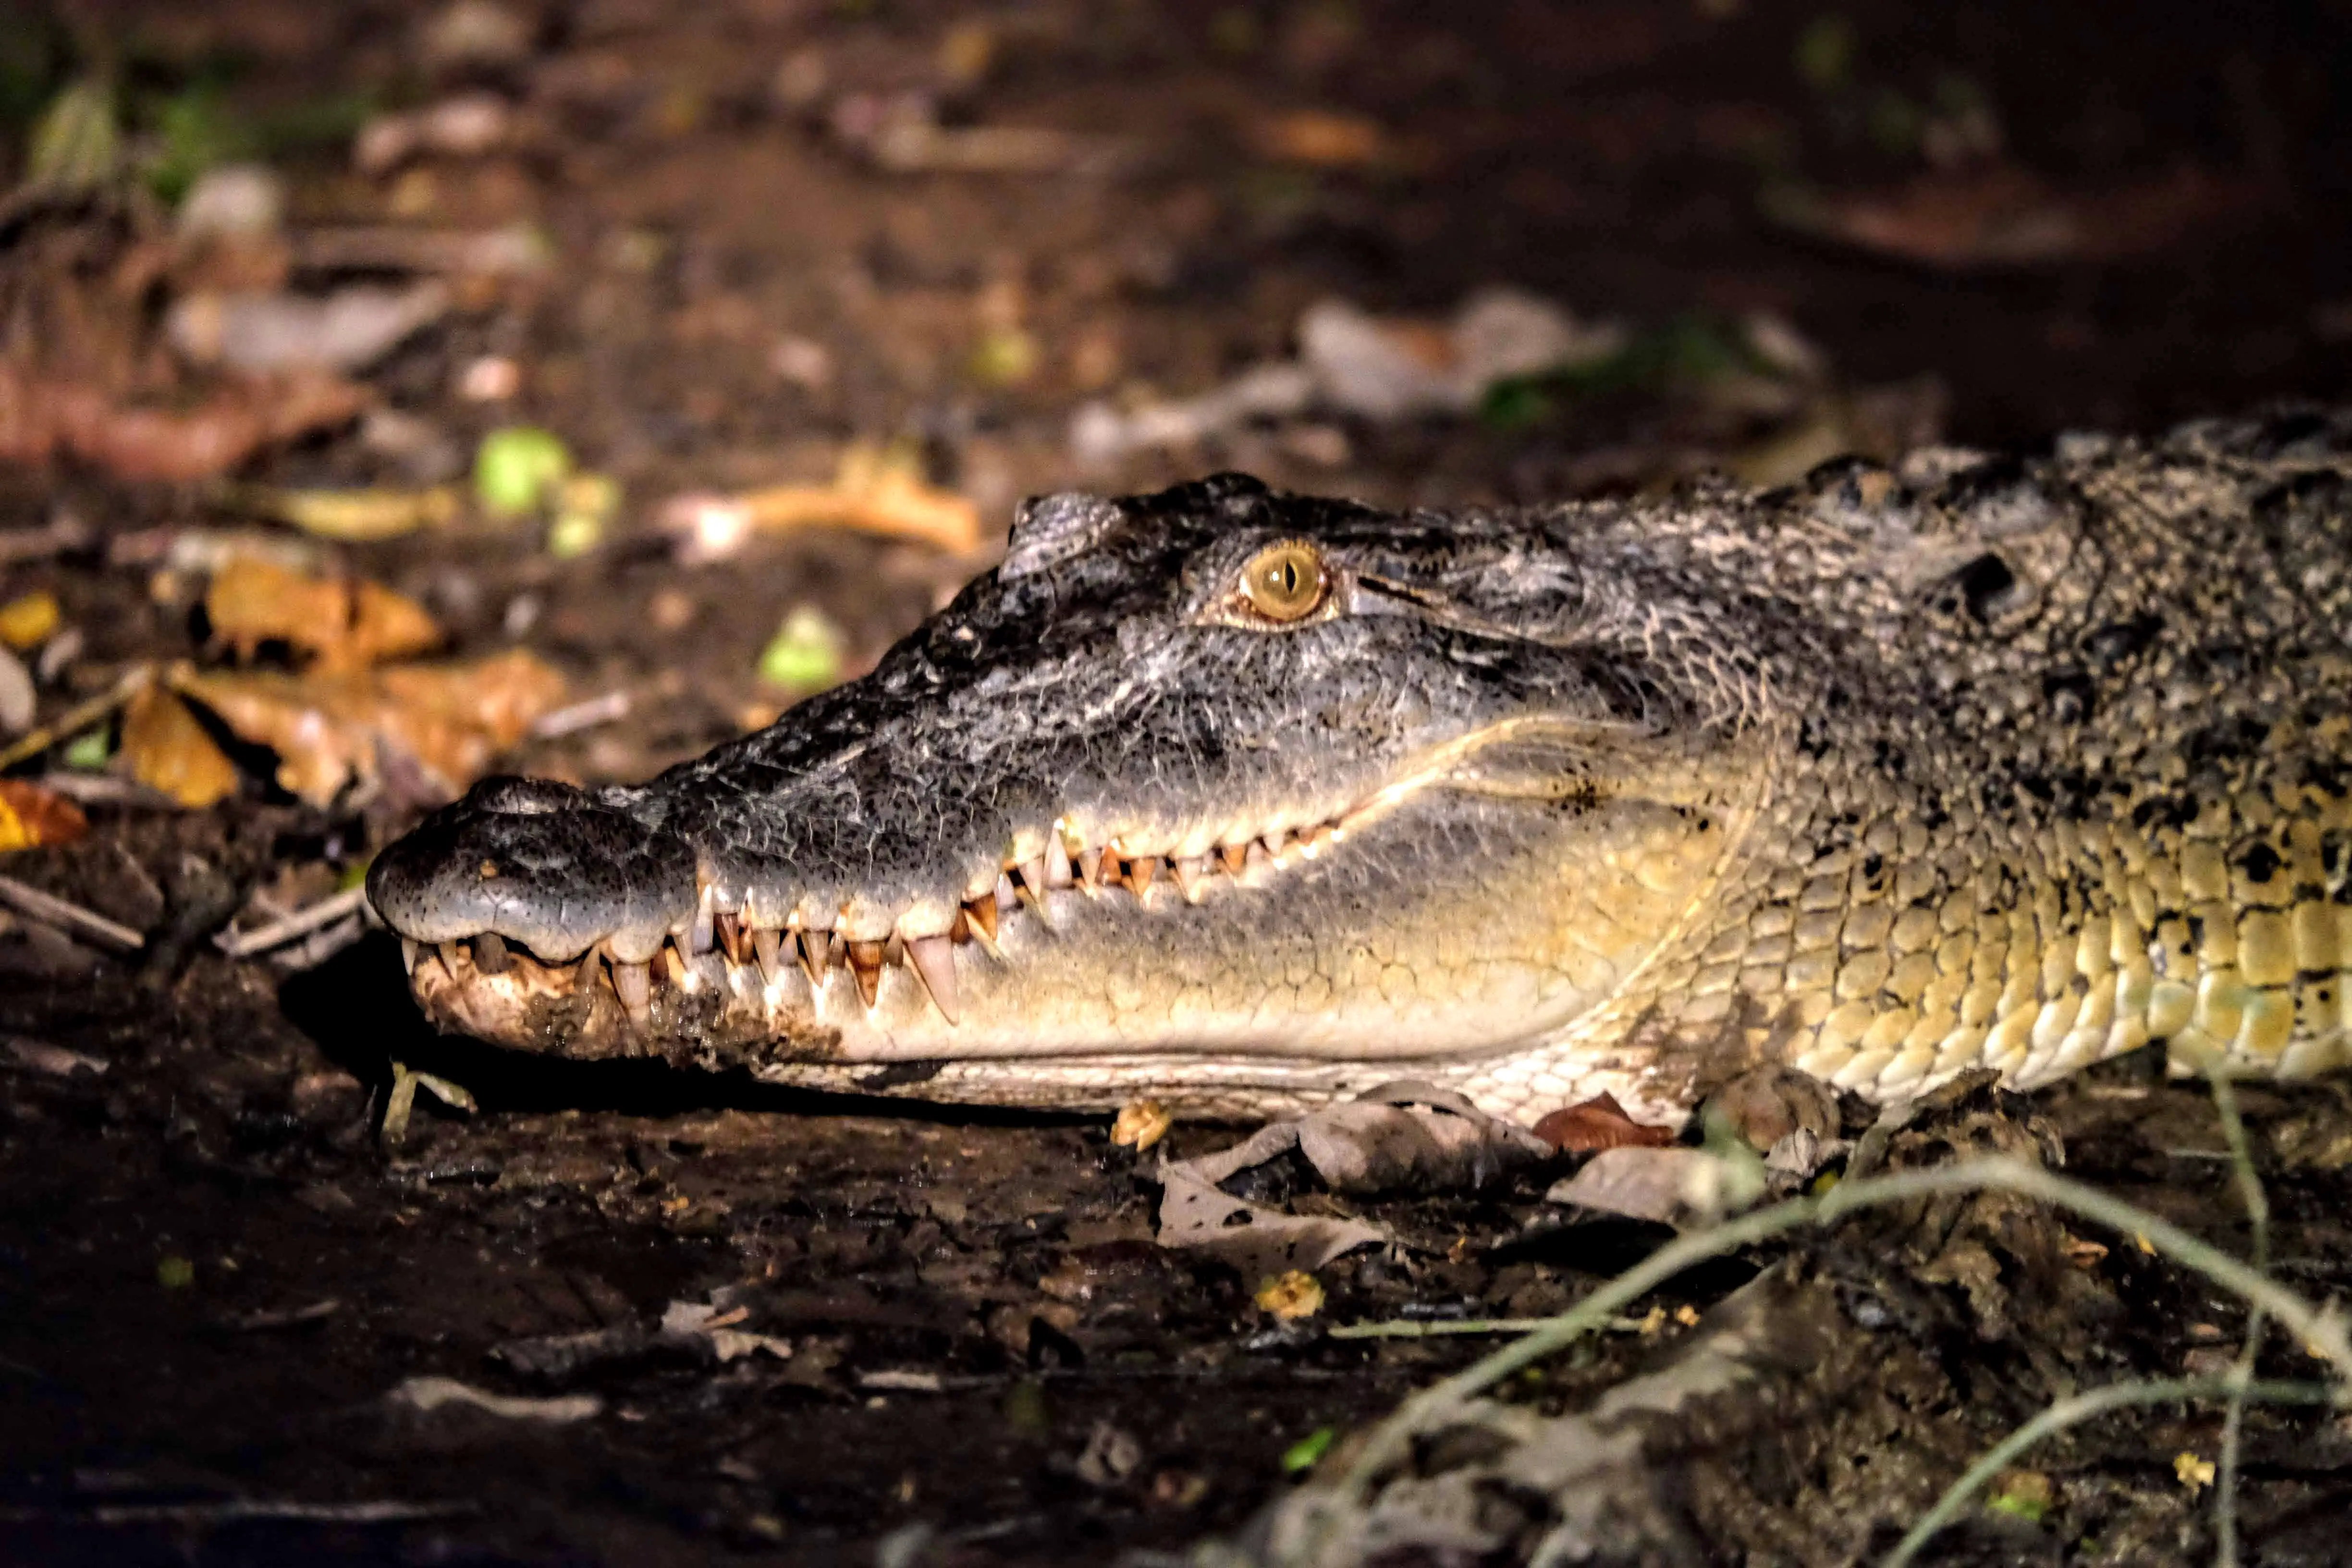 Saltwater crocodile, Kinabatangan River, Borneo 